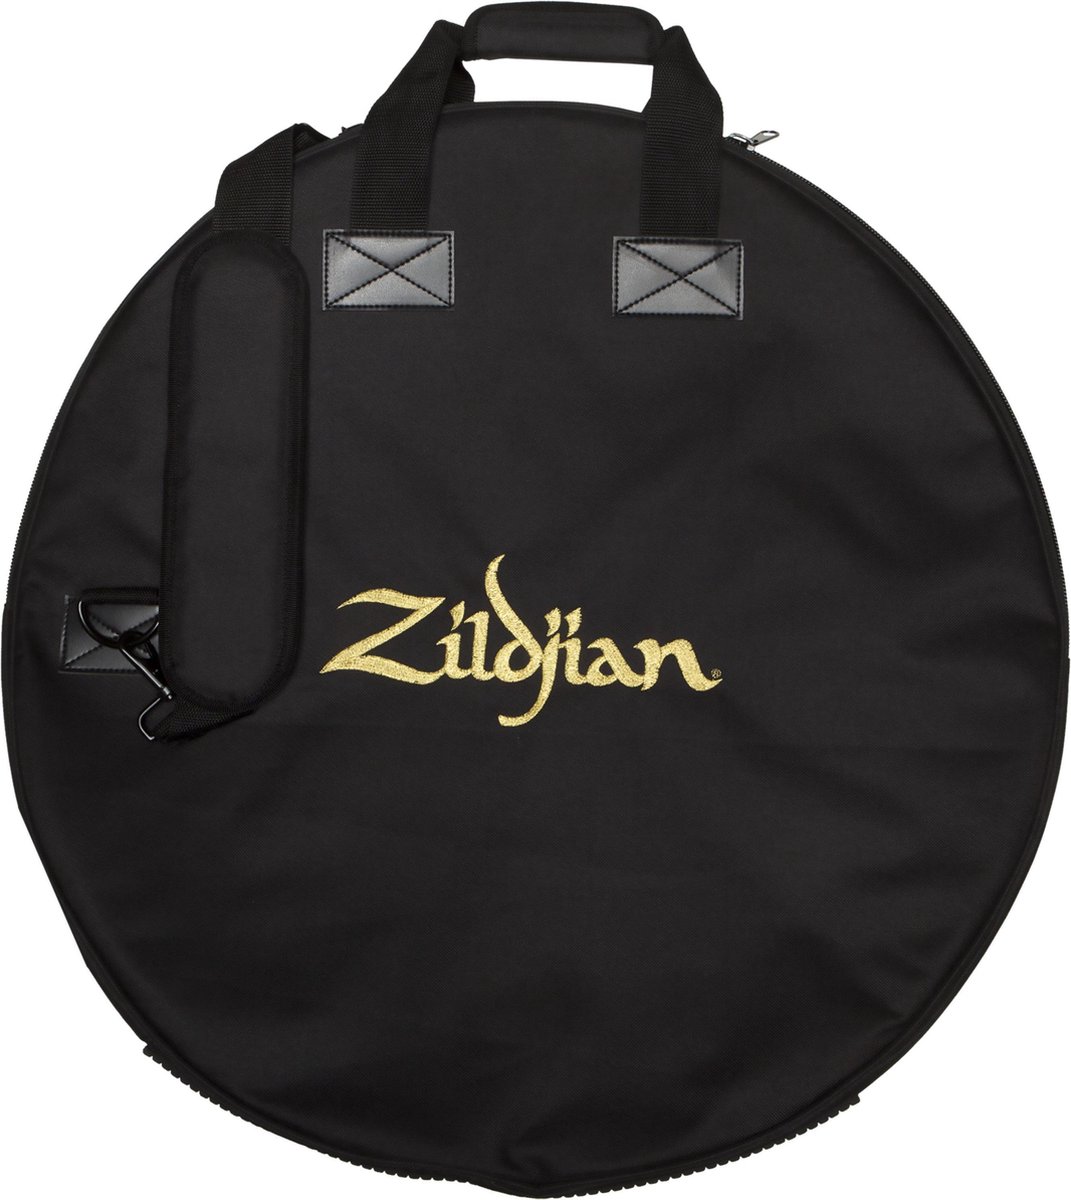 Zildjian ZIZCB24D Deluxe Cymbal Bag 24 inch bekkentas